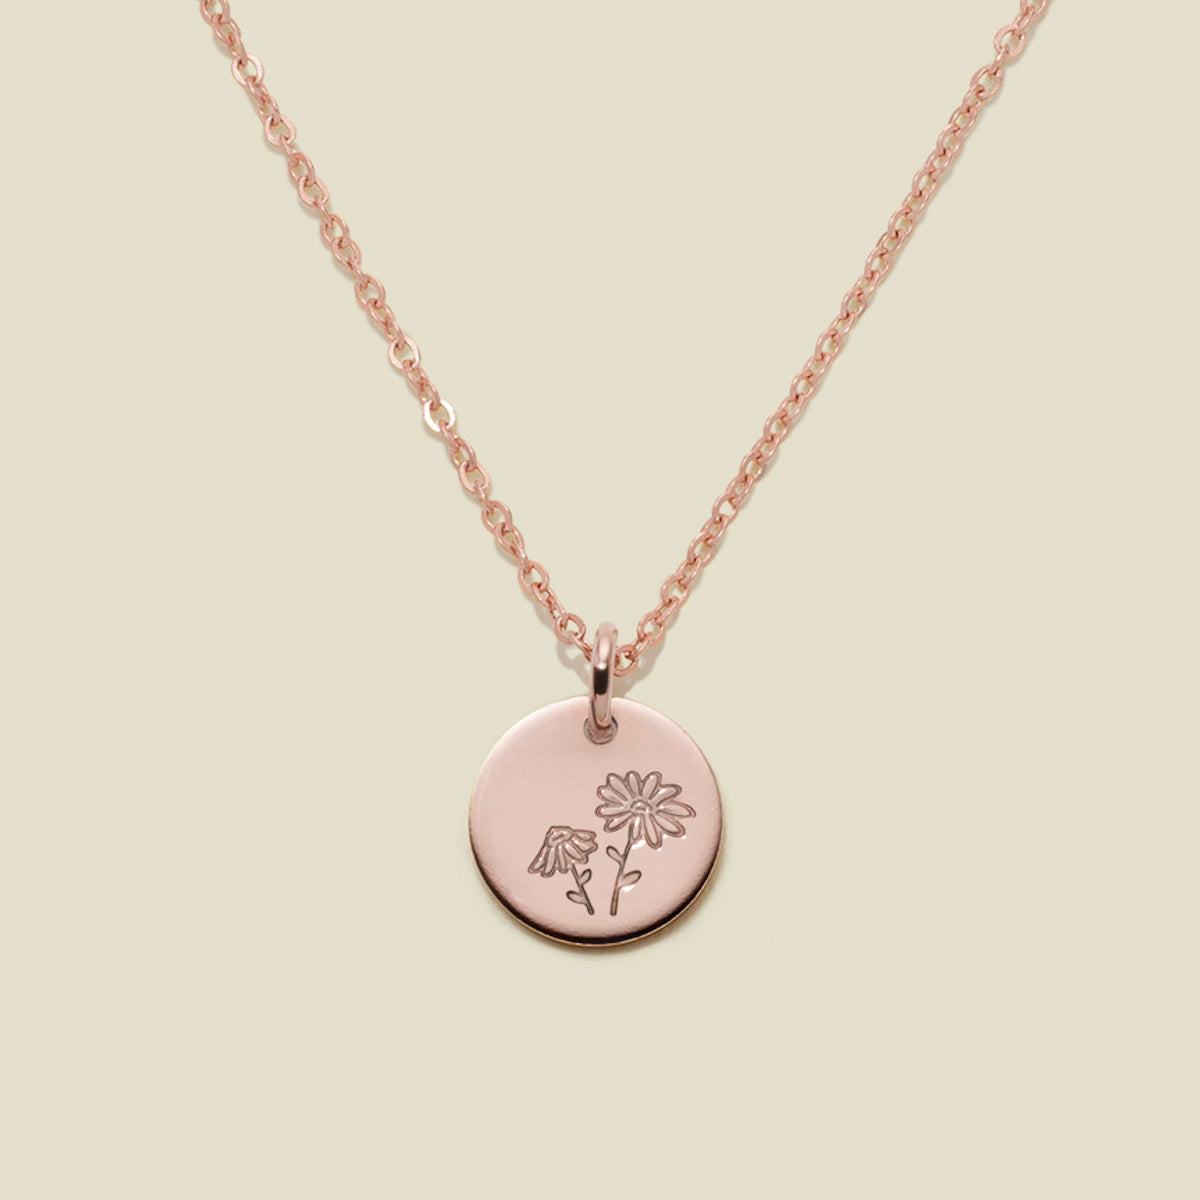 April Birth Flower Necklace Rose Gold Filled / 3/8" / 16"-18" Necklace